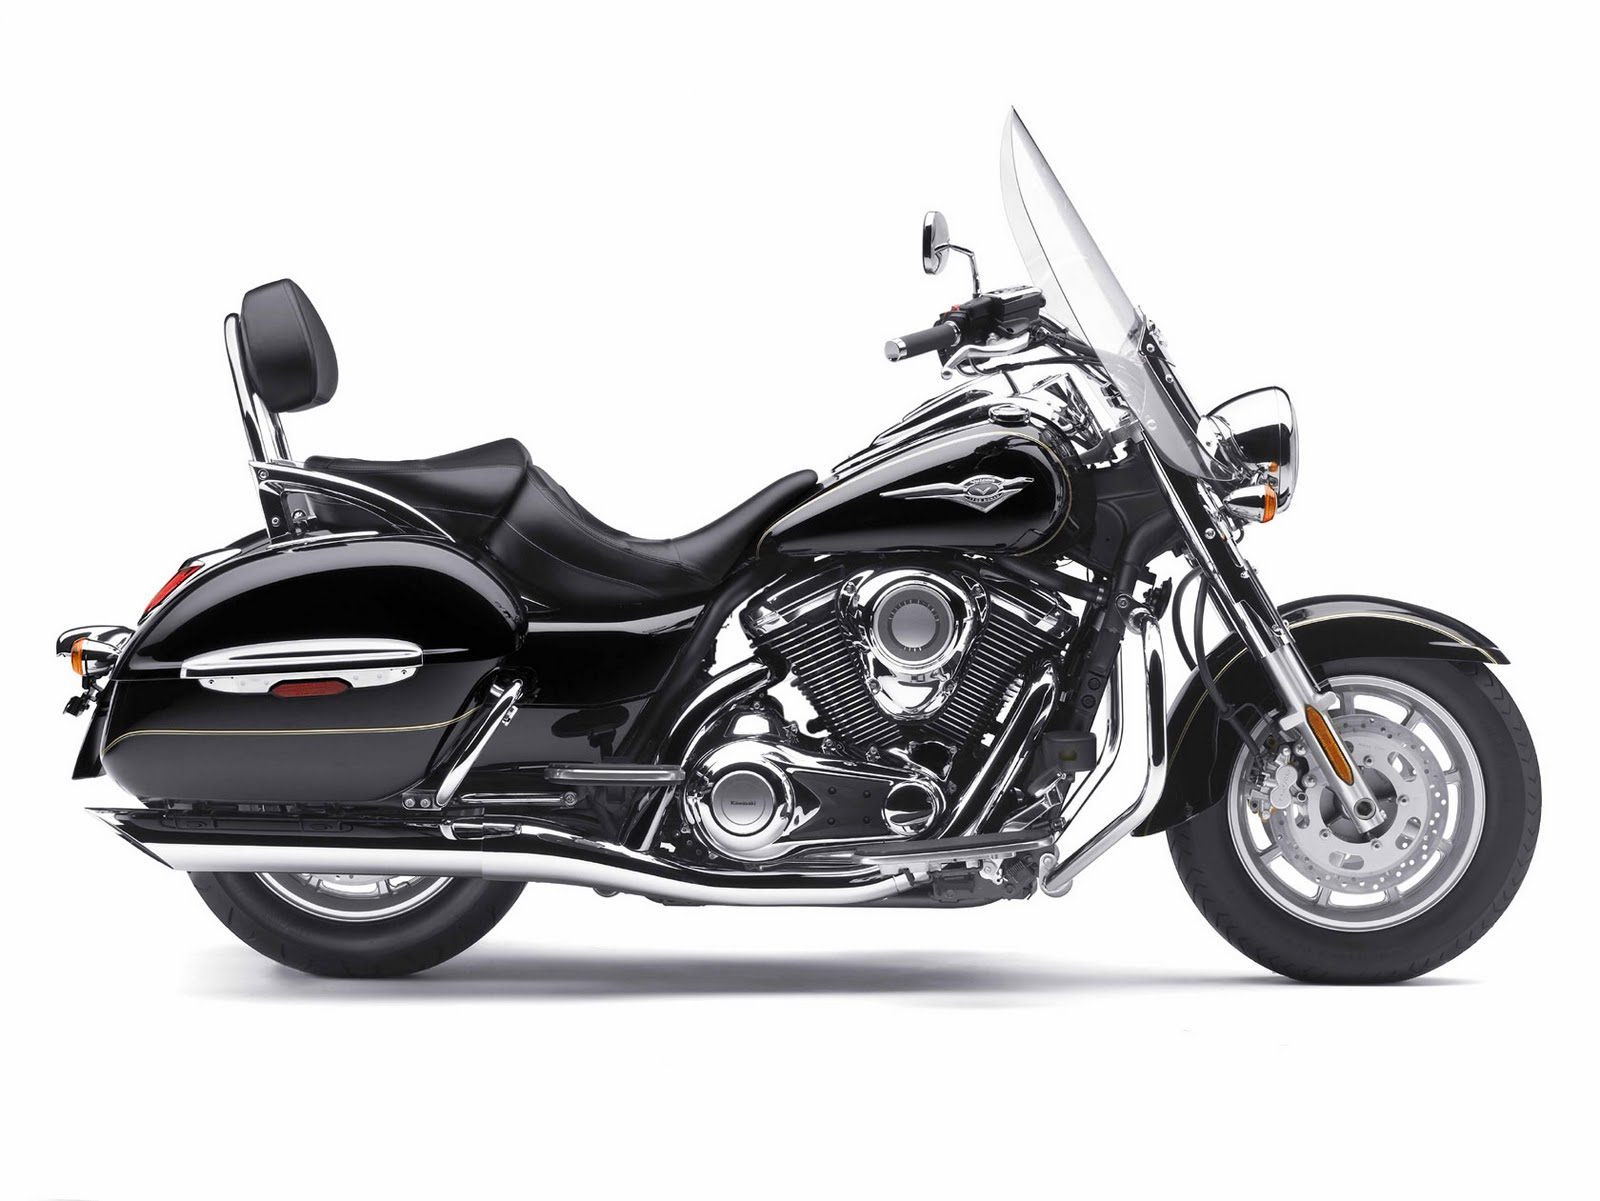 Best Motorcycle: 2009 Kawasaki Vulcan 1700 Nomad